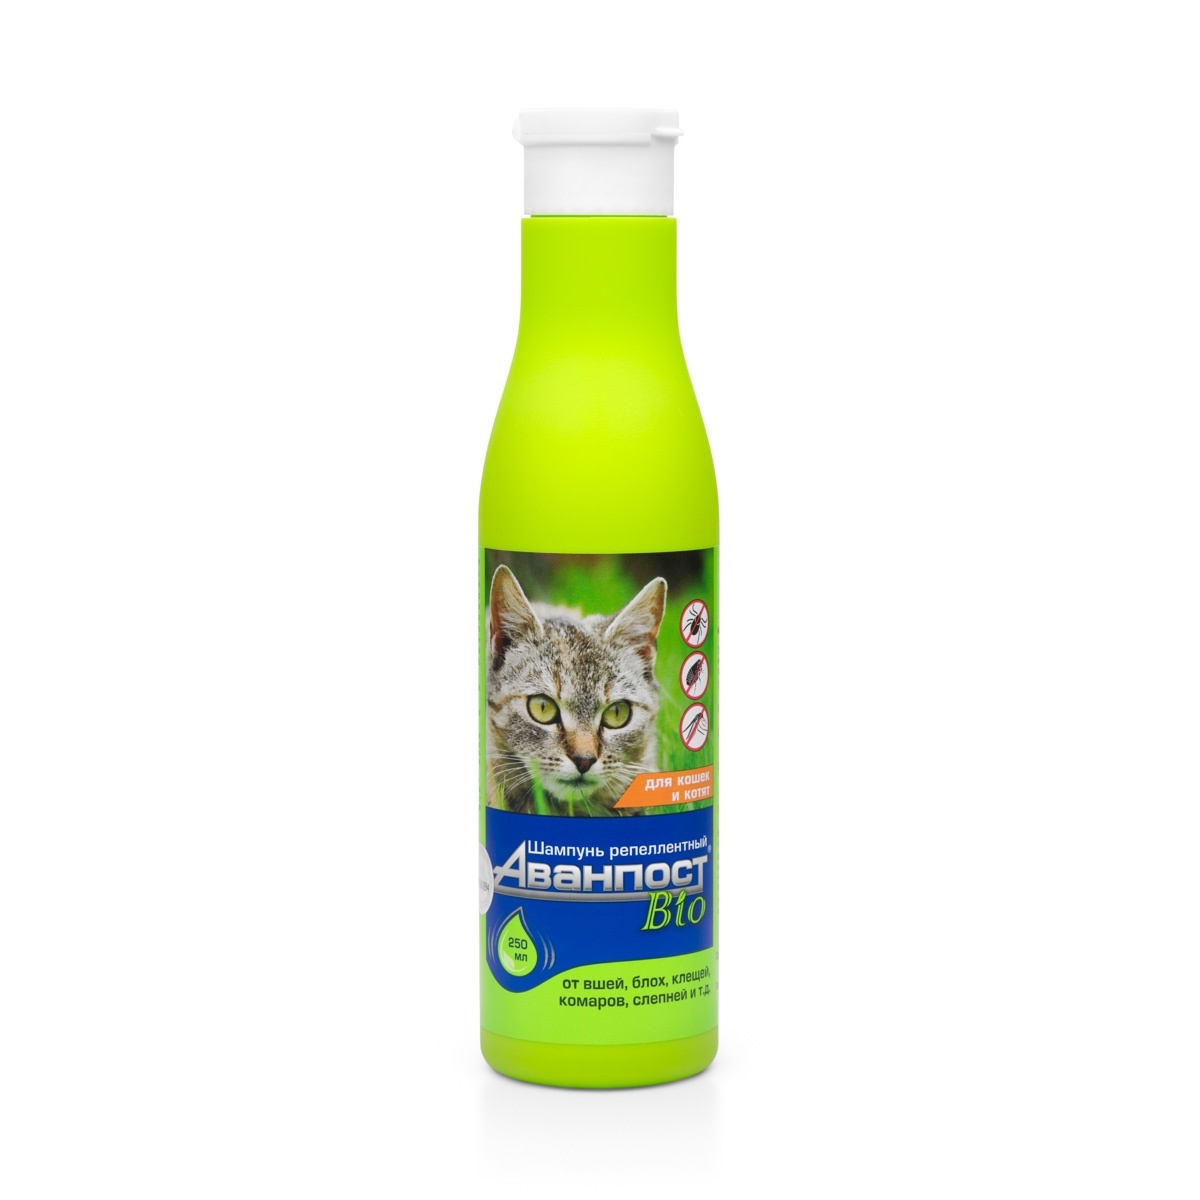 Веда Веда Аванпост BIO шампунь репеллентный для кошек (250 г) веда веда шампунь витаминный для кроликов 220 г